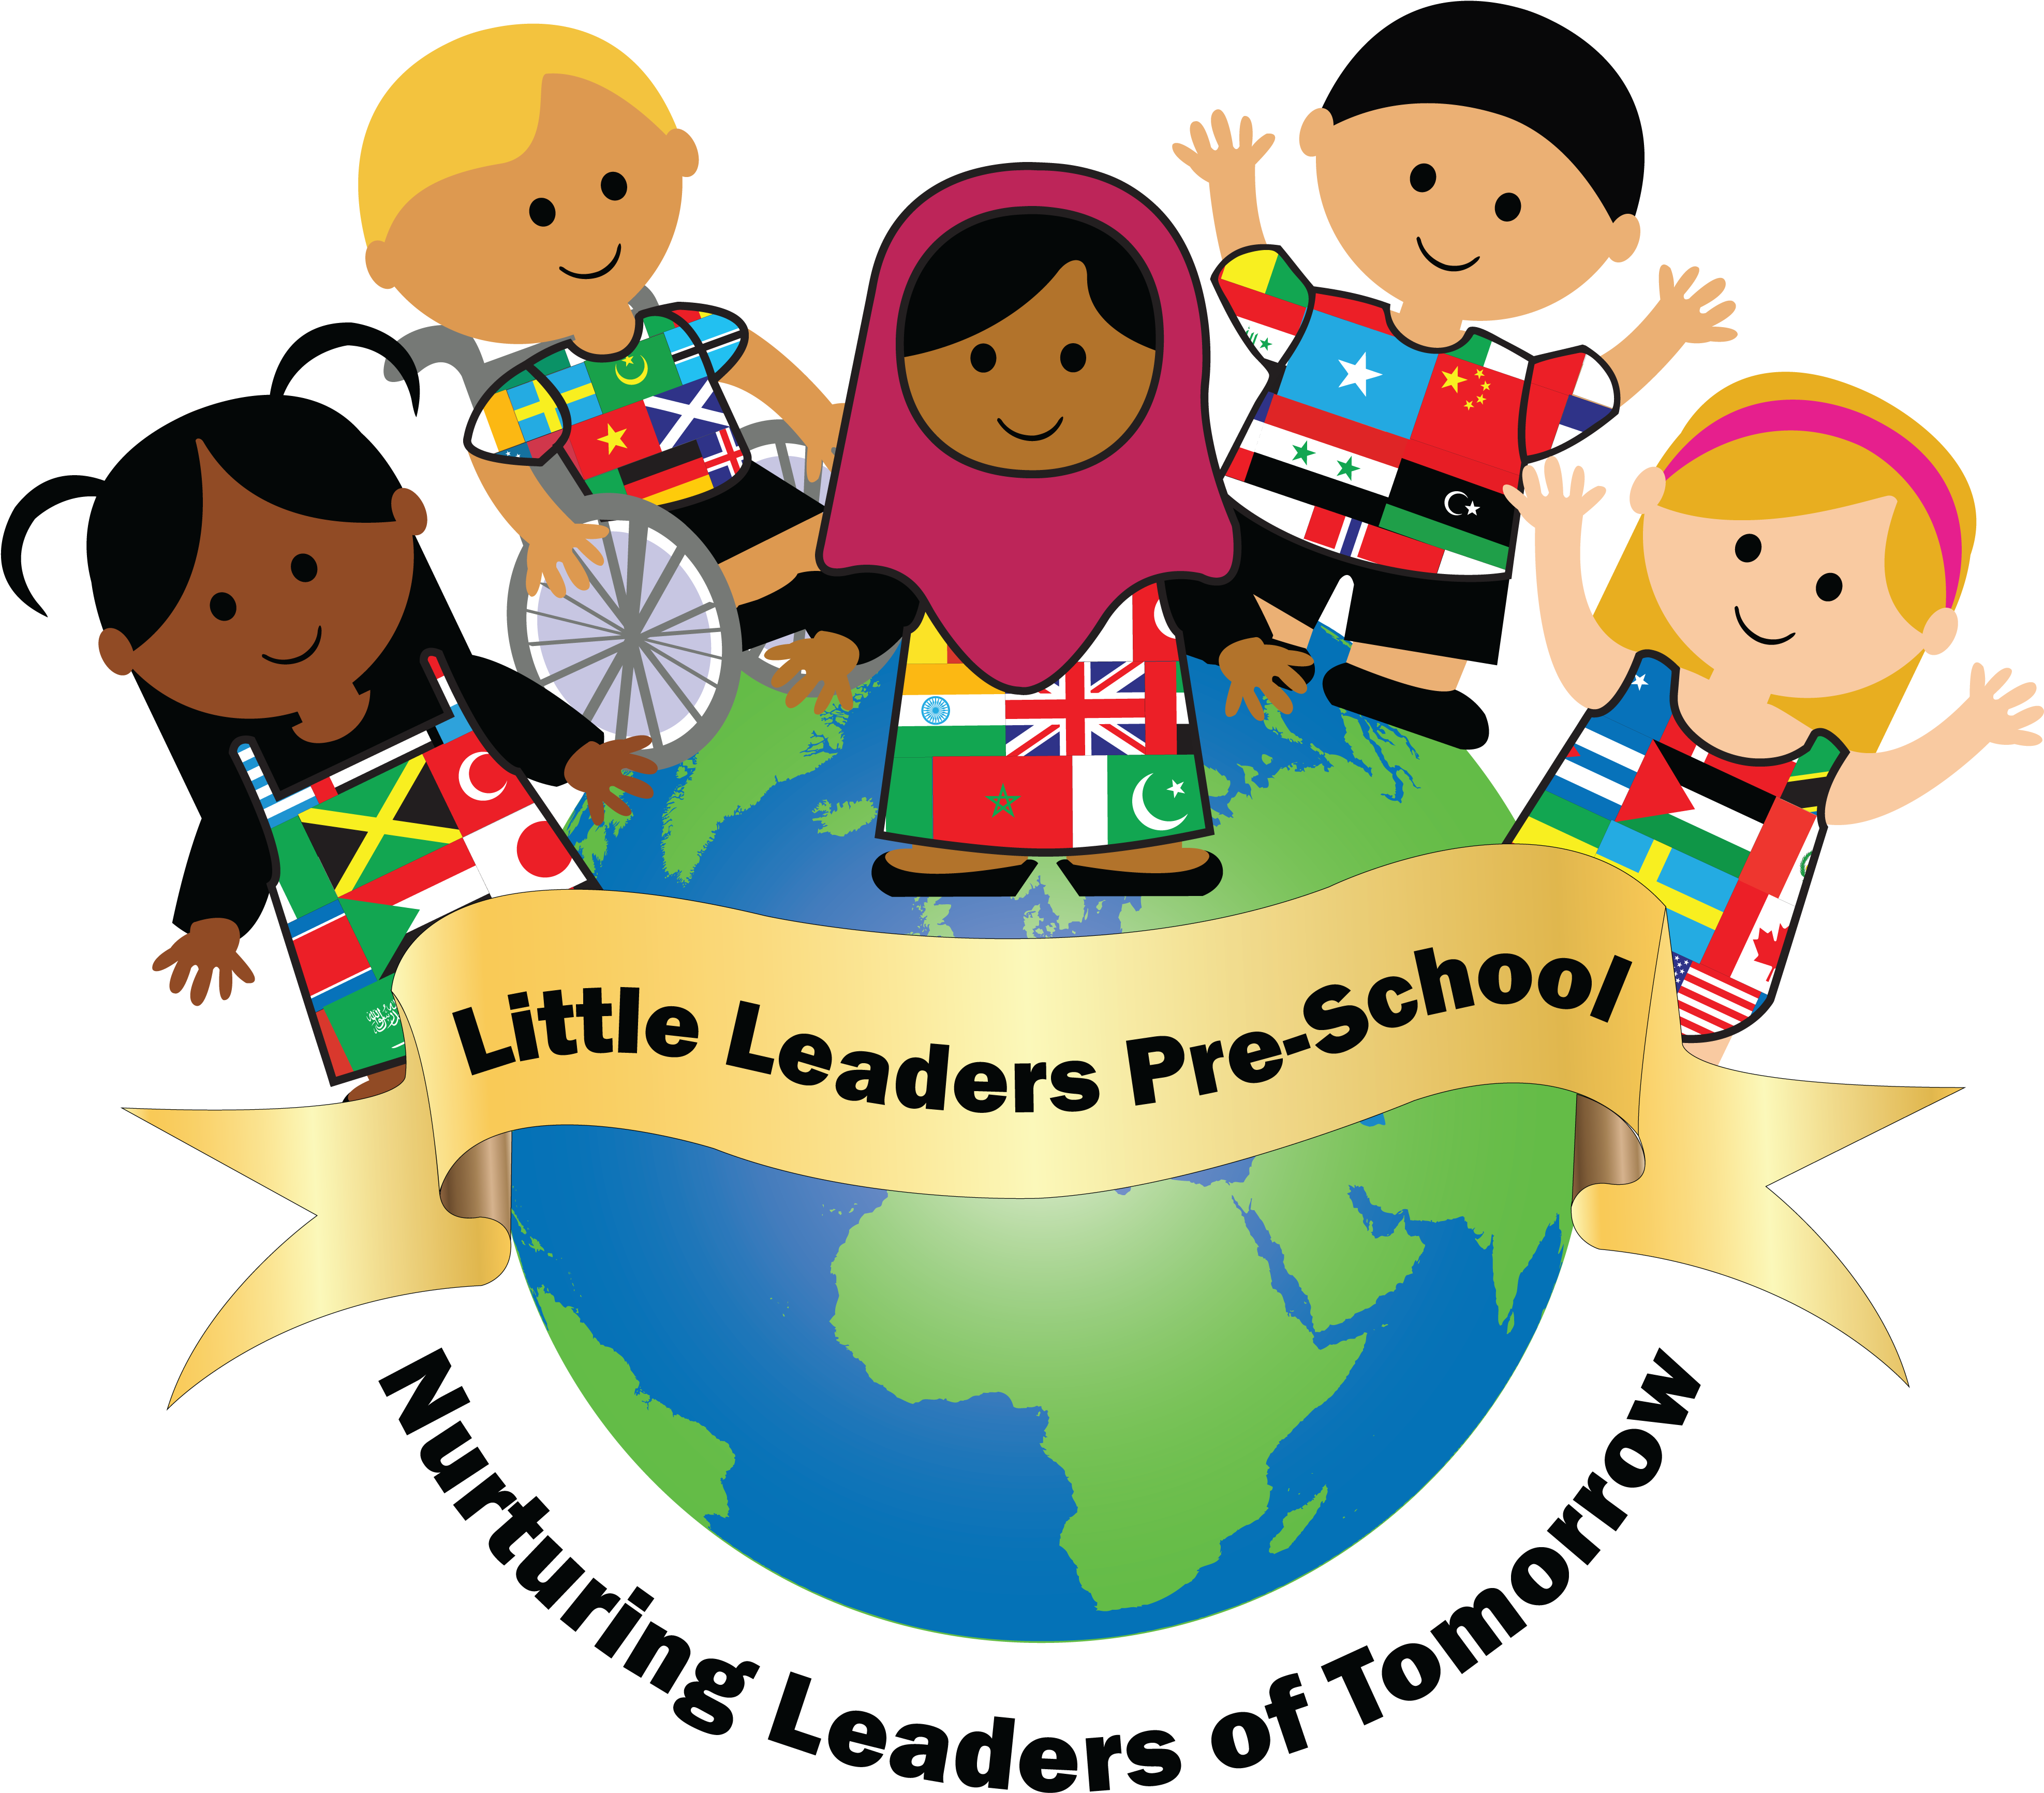 Little Leaders Pre-school - Little Leaders (4029x3508)